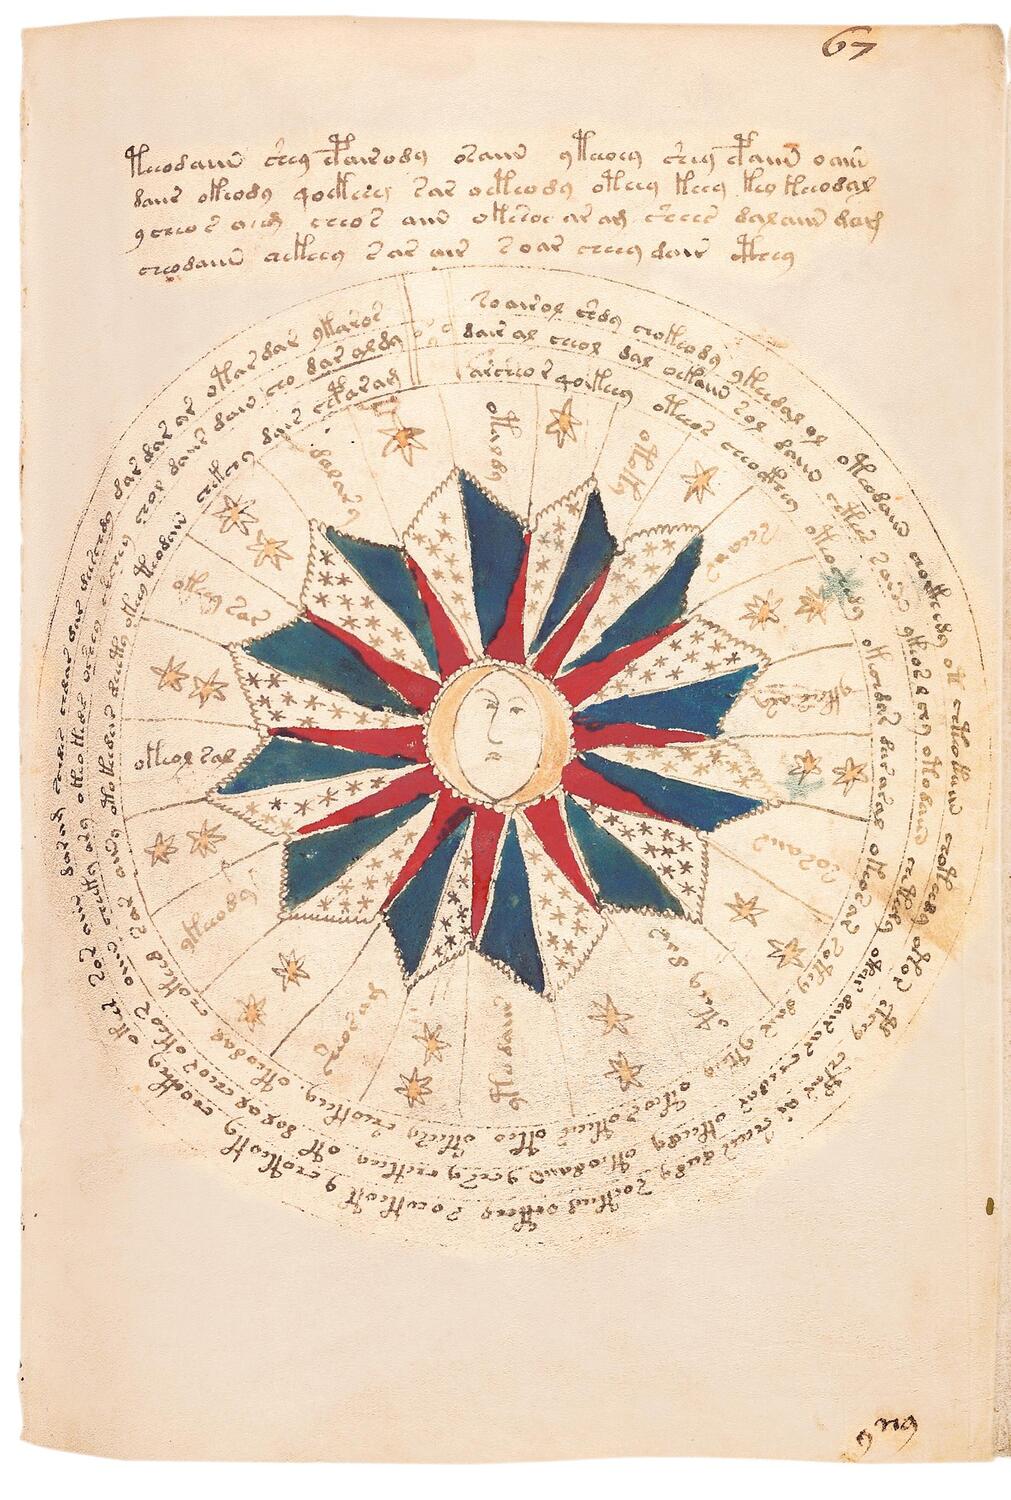 Bild: 9783968494098 | Das Voynich-Manuskript. The Voynich Manuscript. The Complete Edition